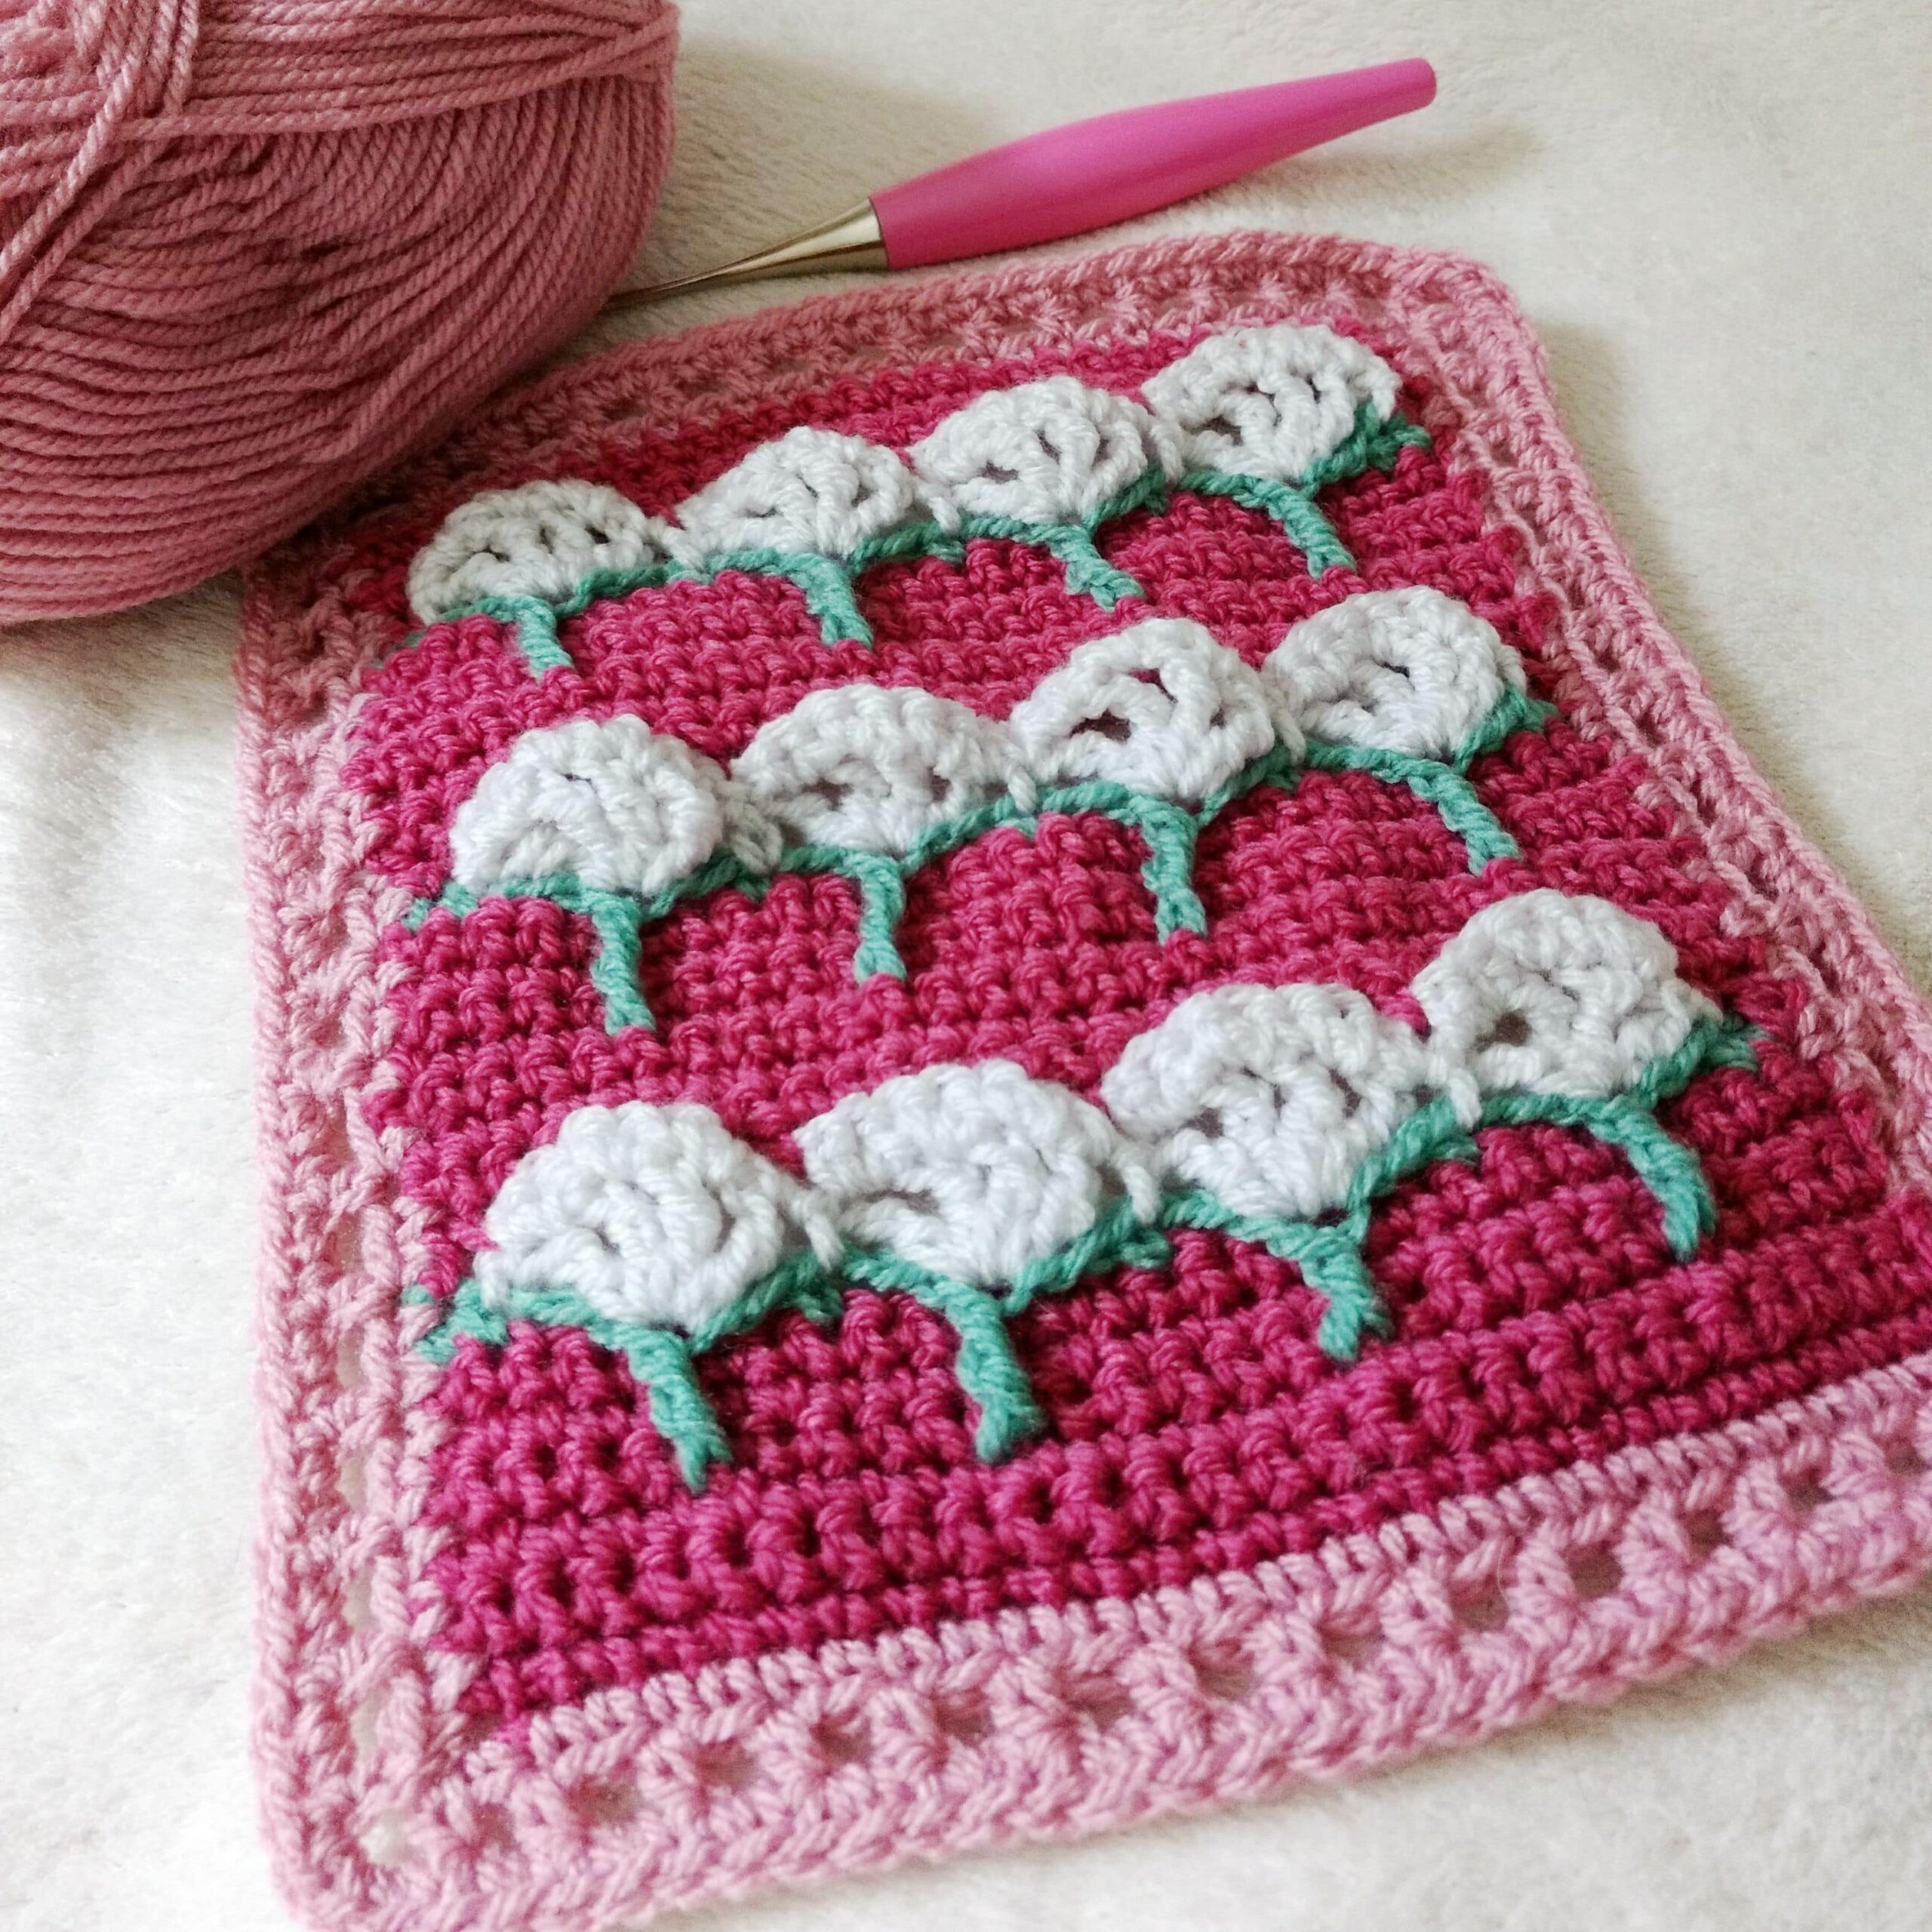 Cow Parsley Square - Free crochet pattern - Crochet wild flowers - crochet cloudberry